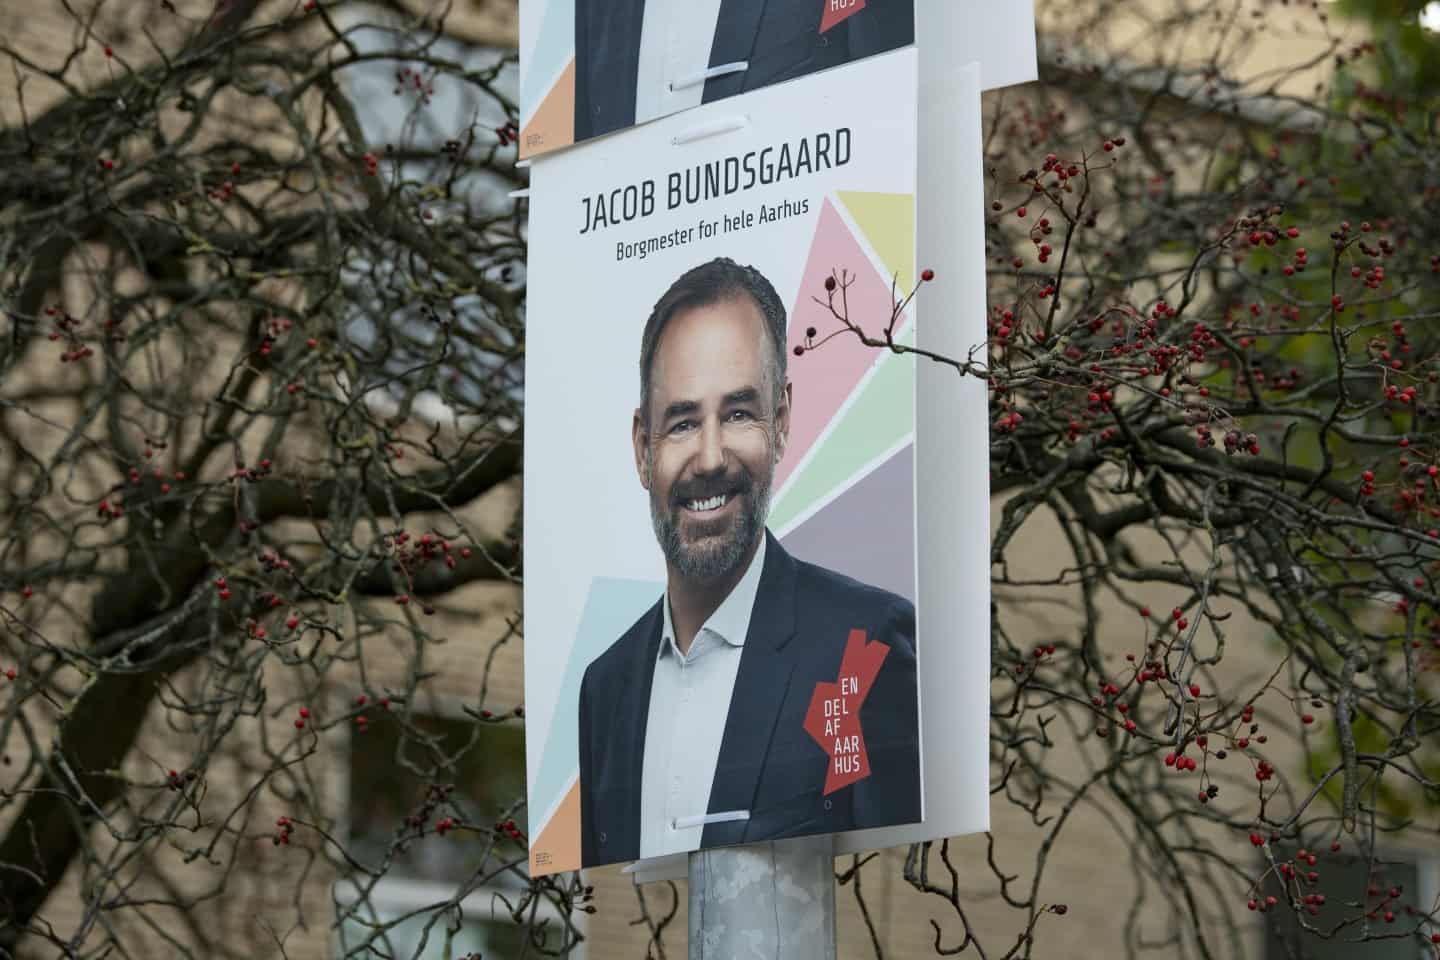 vælger undrer sig borgmesteren: Stiller Bundsgaard egentlig op Socialdemokratiet? |